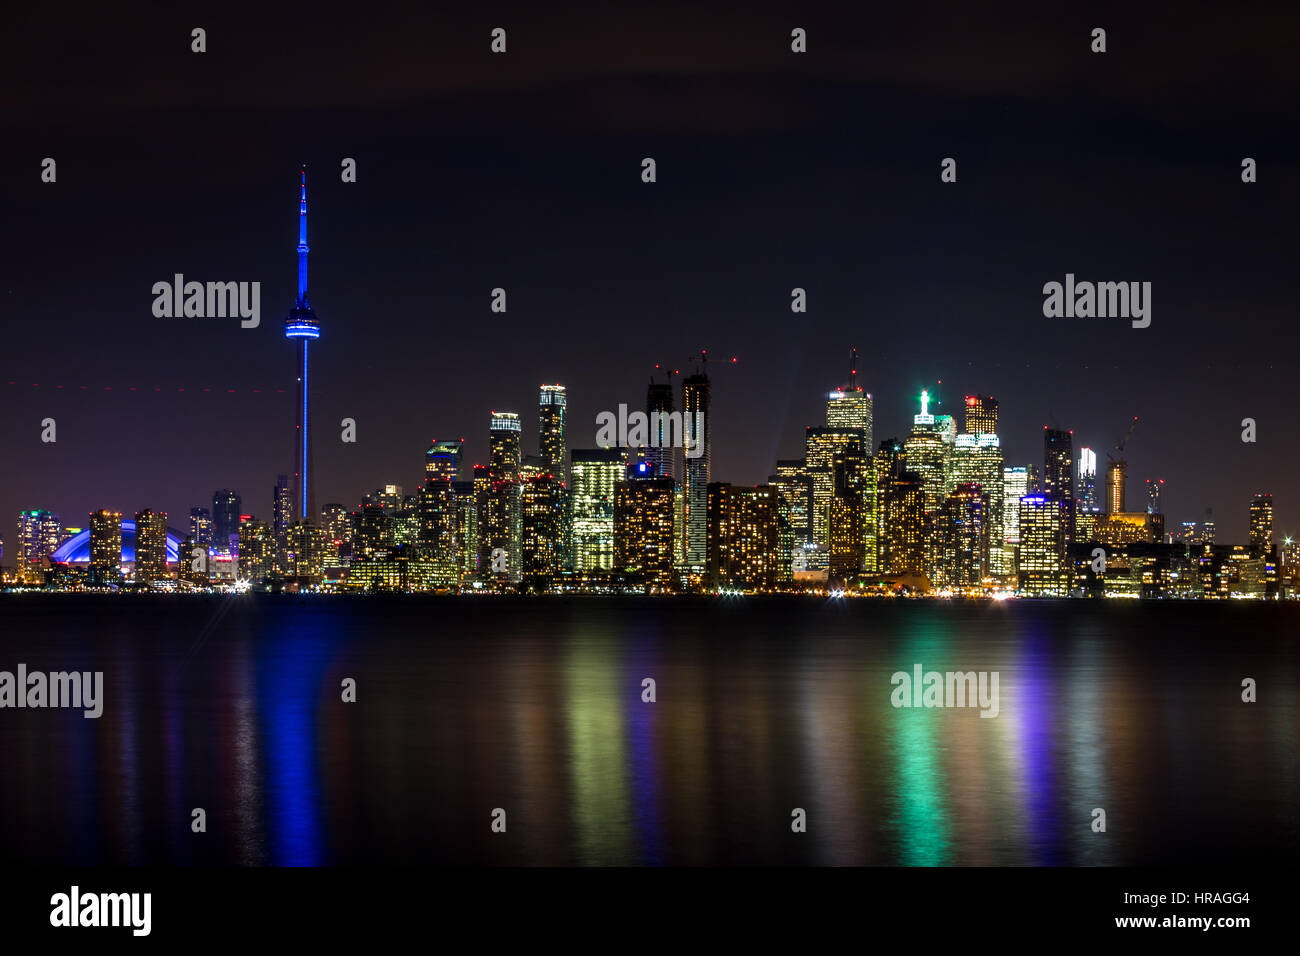 oronto Skyline at night - Toronto, Ontario, Canada Stock Photo